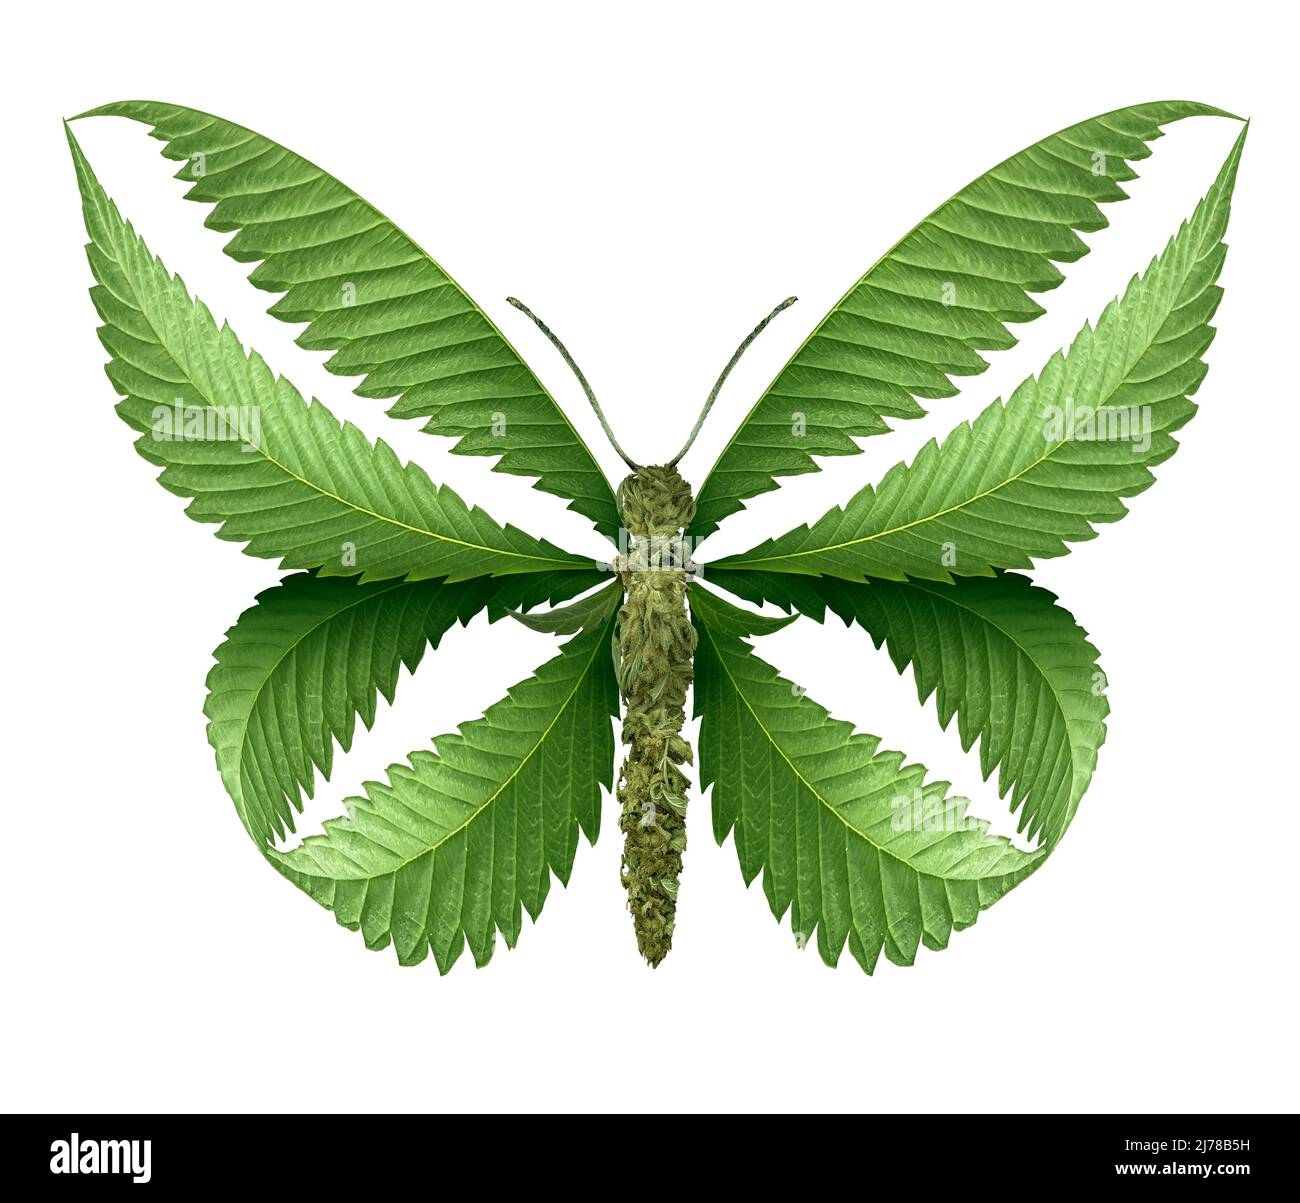 Mariposa de marihuana y el símbolo de cannabis como hojas de maleza que representan una olla o medicina herbaria aislada sobre un fondo blanco. Foto de stock